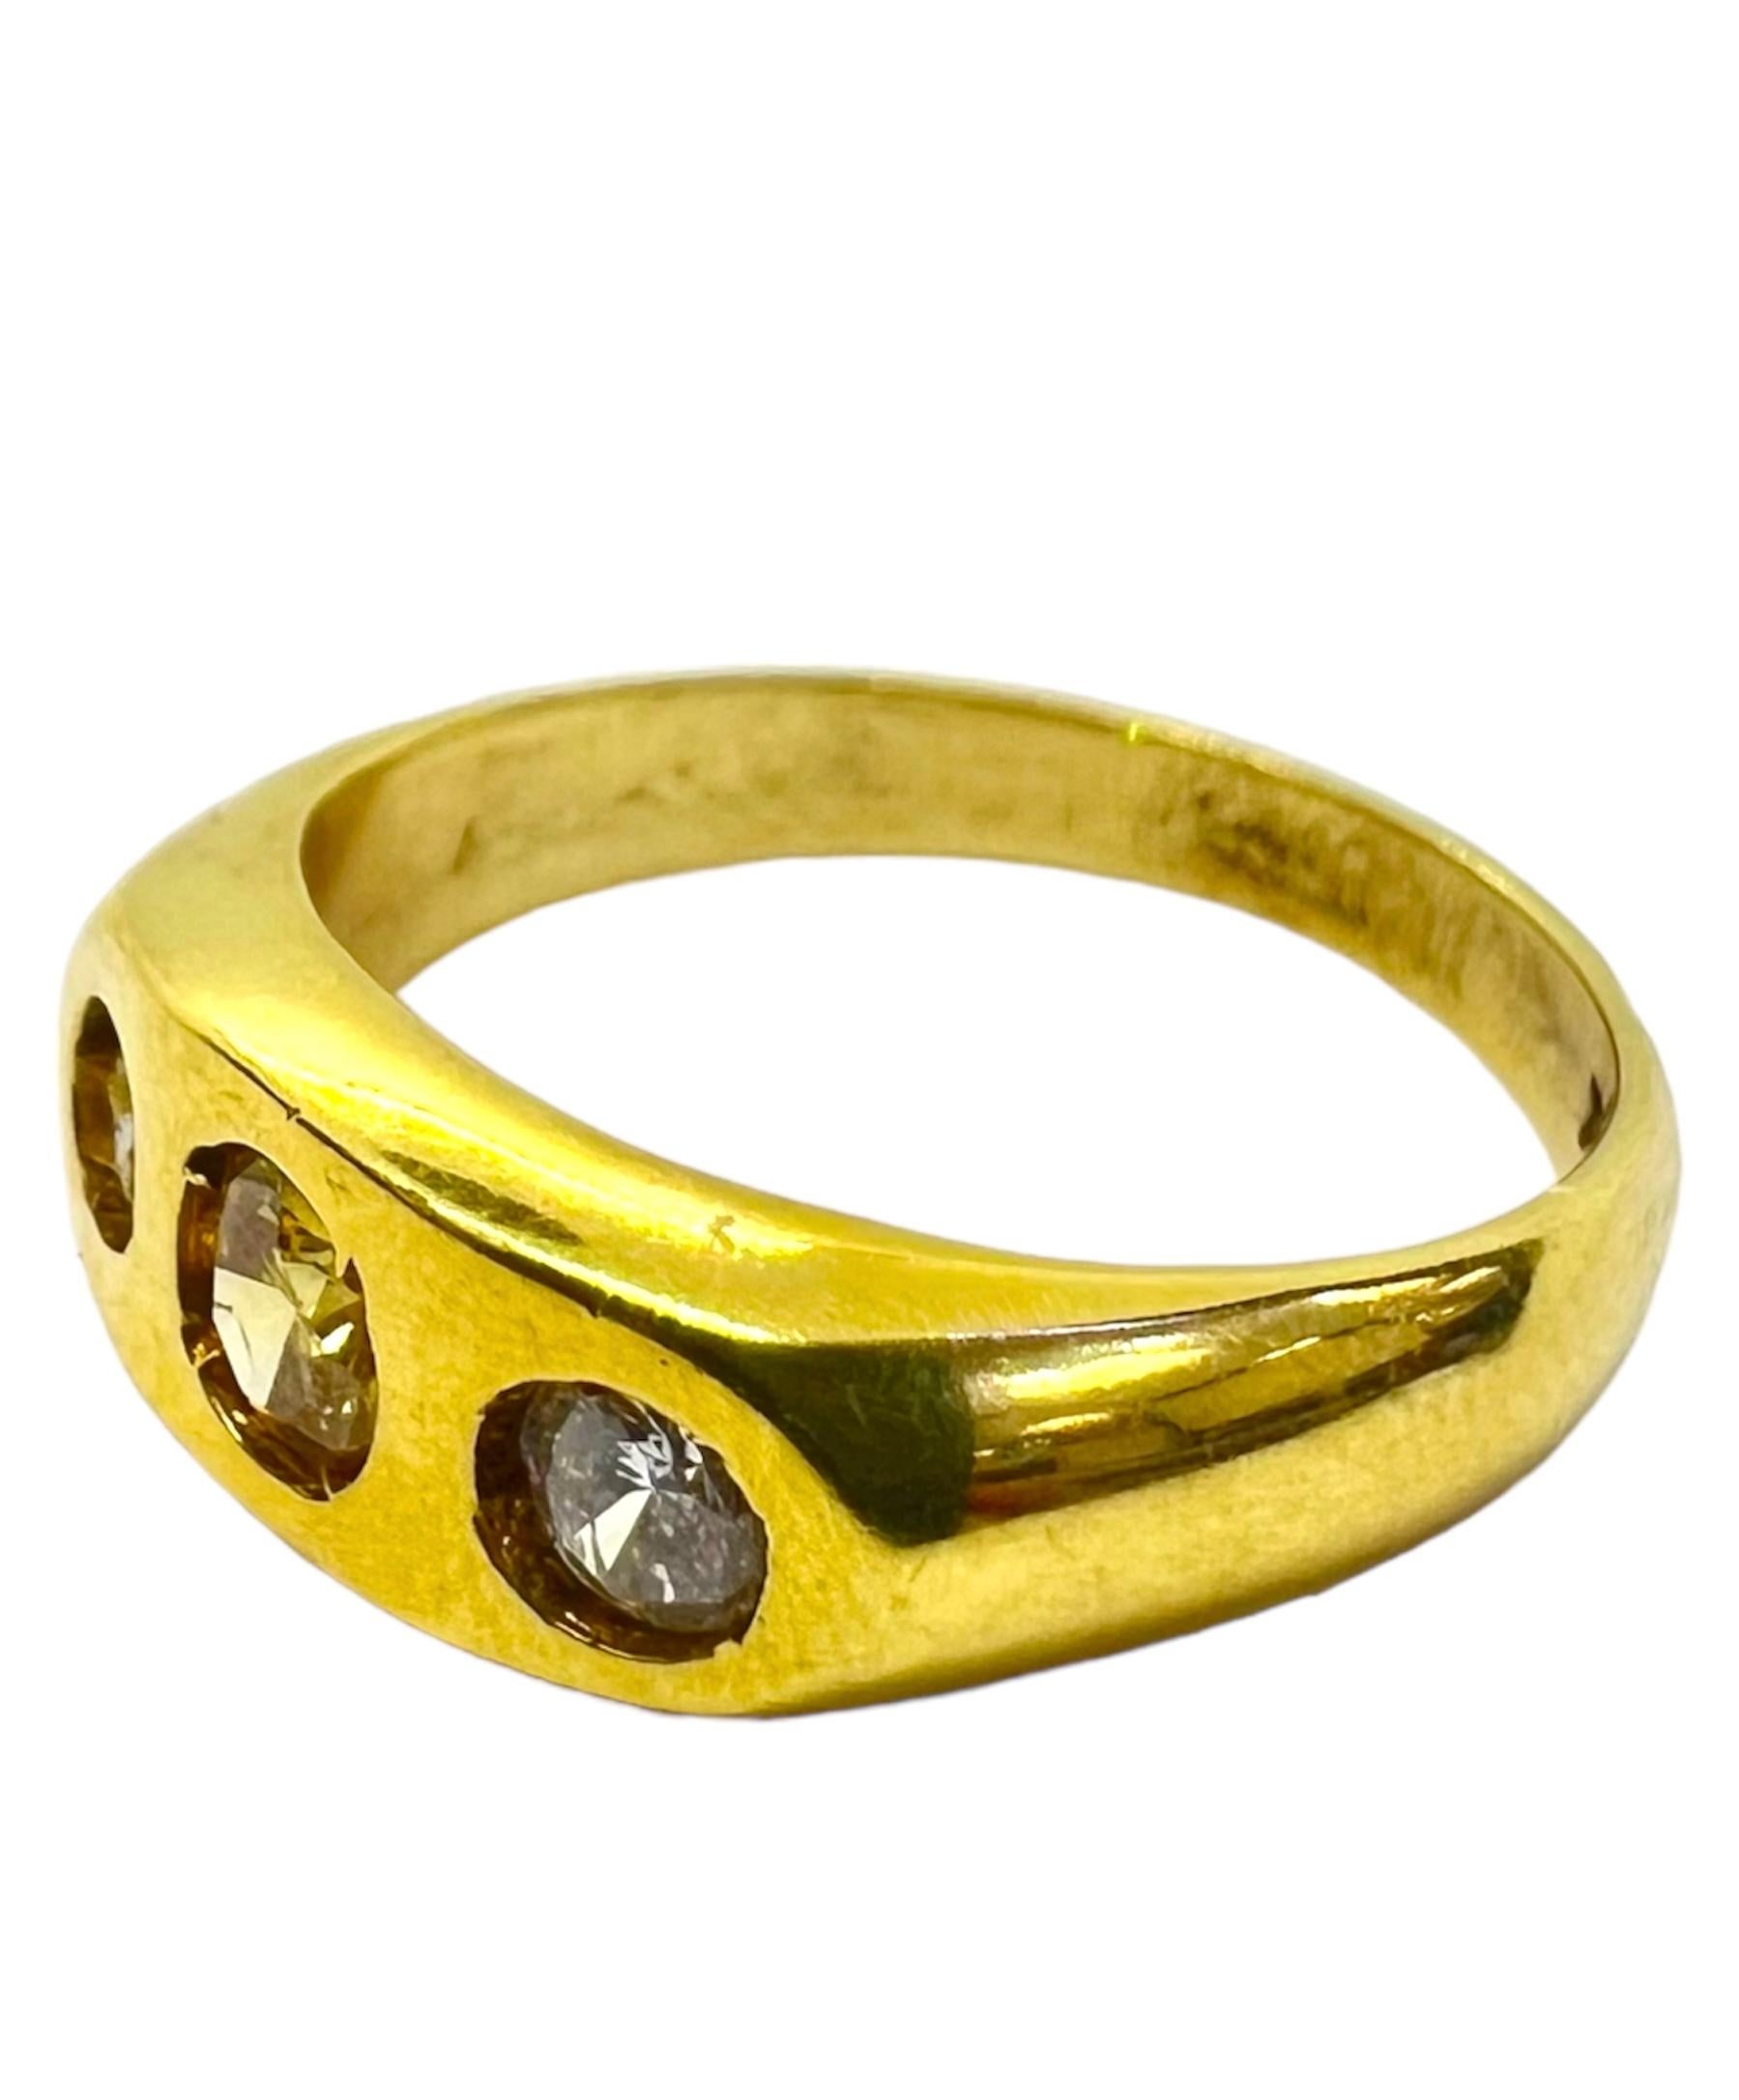 Bague en or jaune 18K avec diamants blancs et diamant jaune.

Sophia D by Joseph Dardashti Ltd est connue dans le monde entier depuis 35 ans et s'inspire du design classique de l'Art déco qui fusionne avec les techniques de fabrication modernes. 